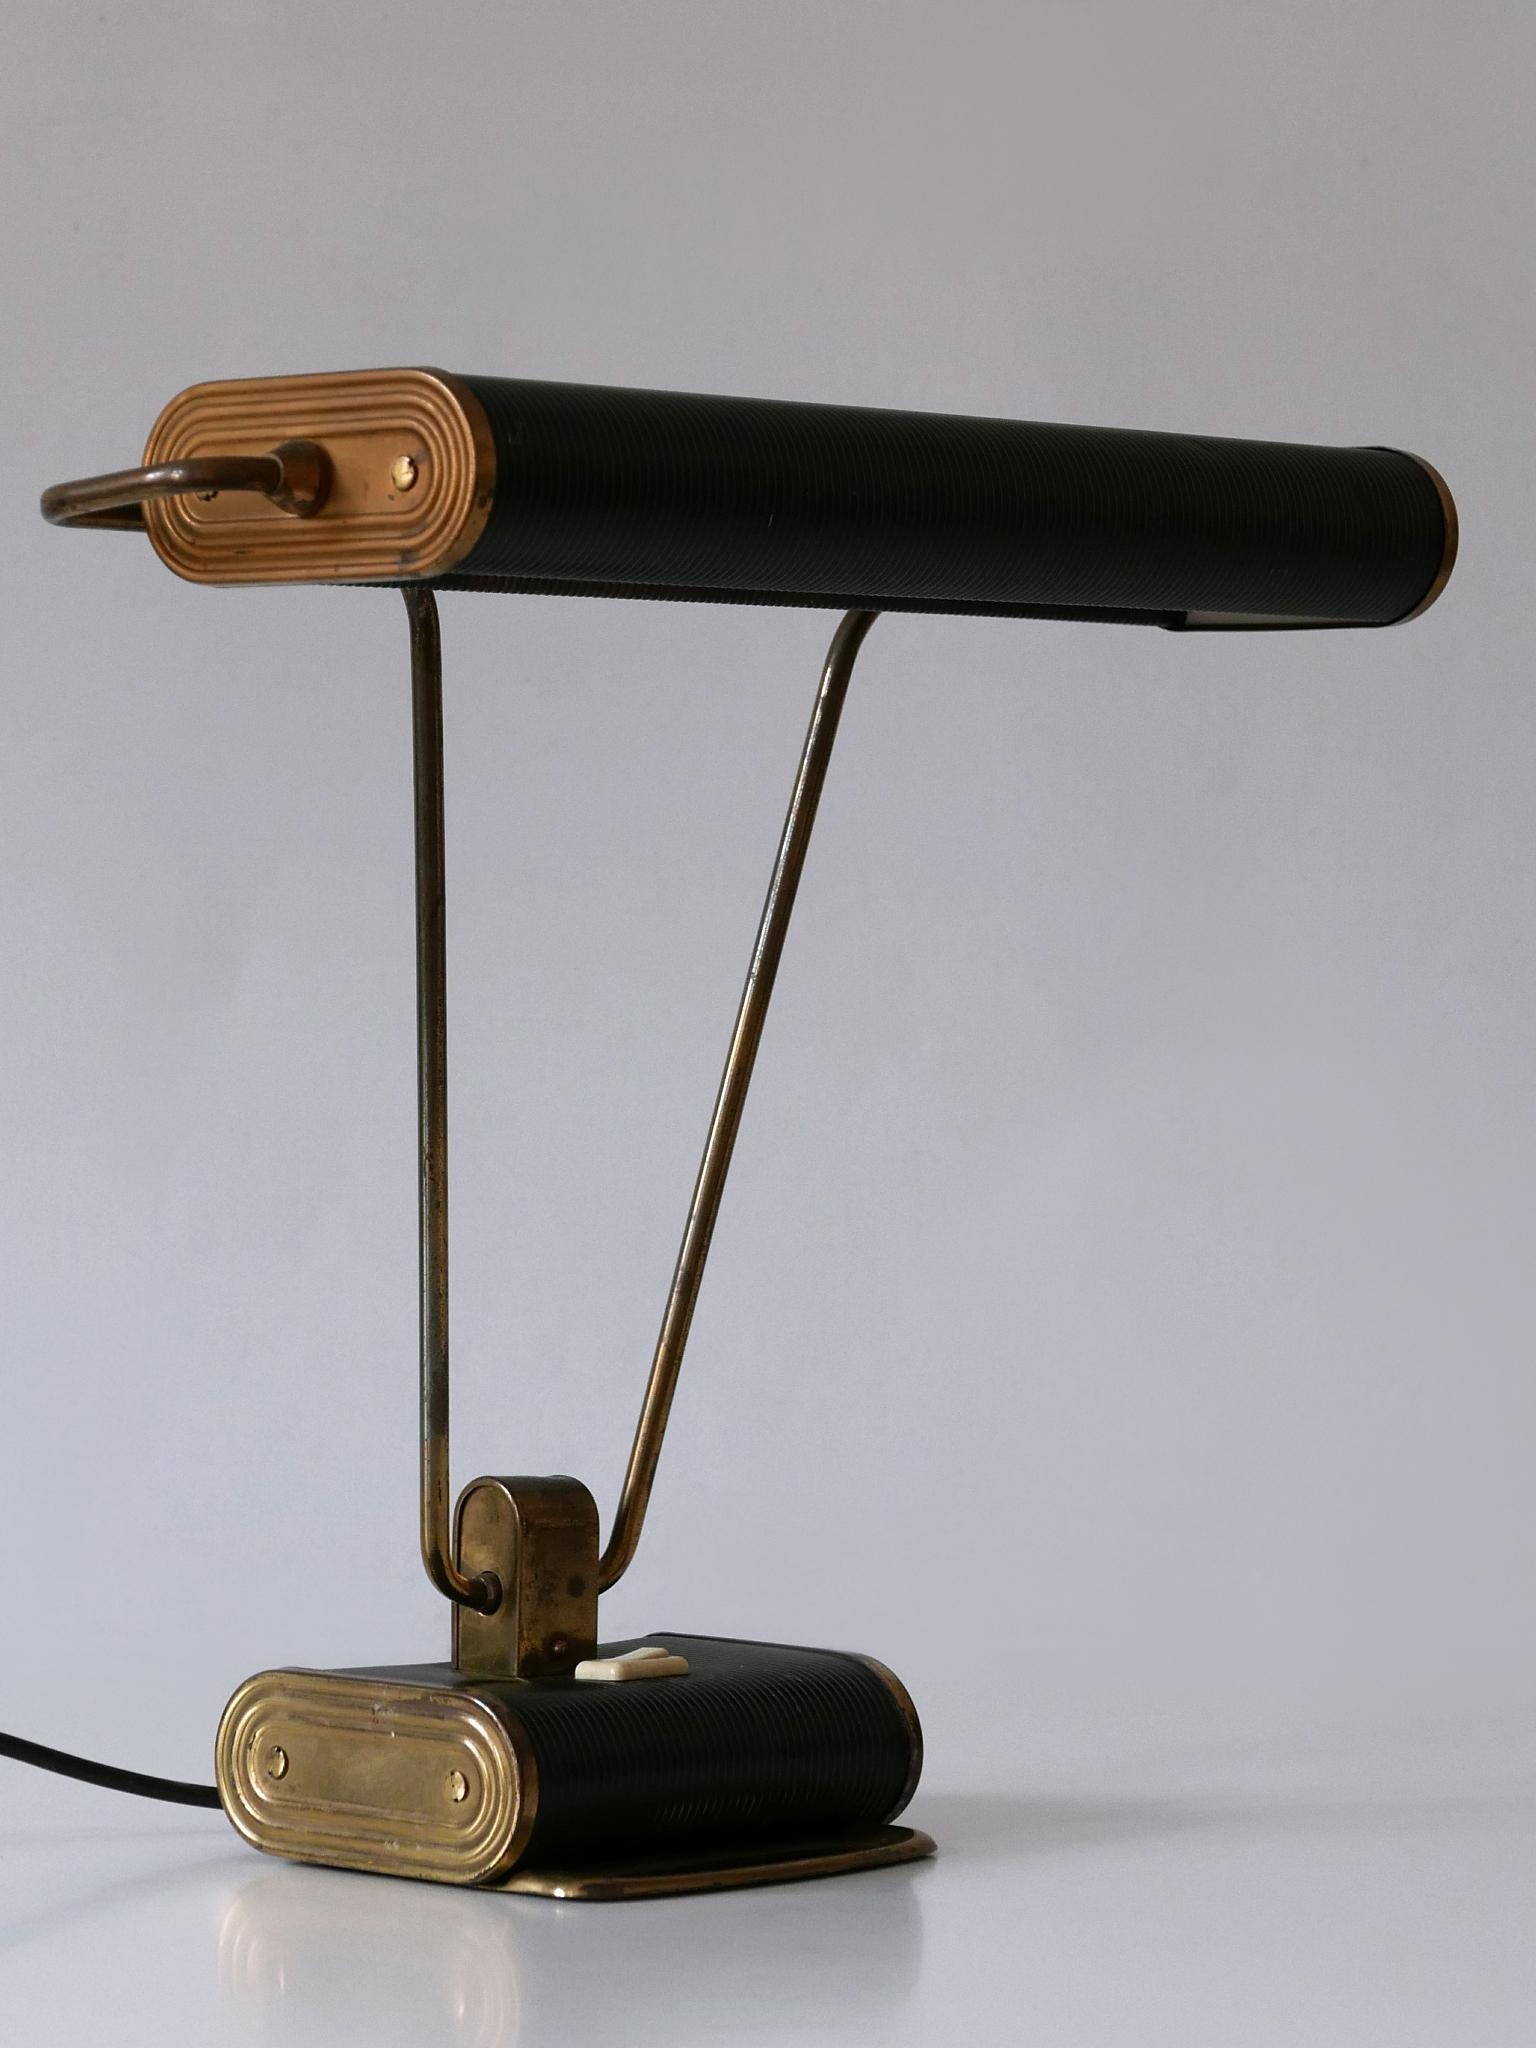 Elegante Art-Déco-Tischlampe oder Schreibtischleuchte 'No 71'. Lampenschirm drehbar. Entworfen von André Mounique für Jumo, Frankreich, 1930er Jahre.

Insgesamt 5 Lampen in zwei Farben erhältlich!
Dies ist die Nummer 3 der fünf Schreibtischleuchten.